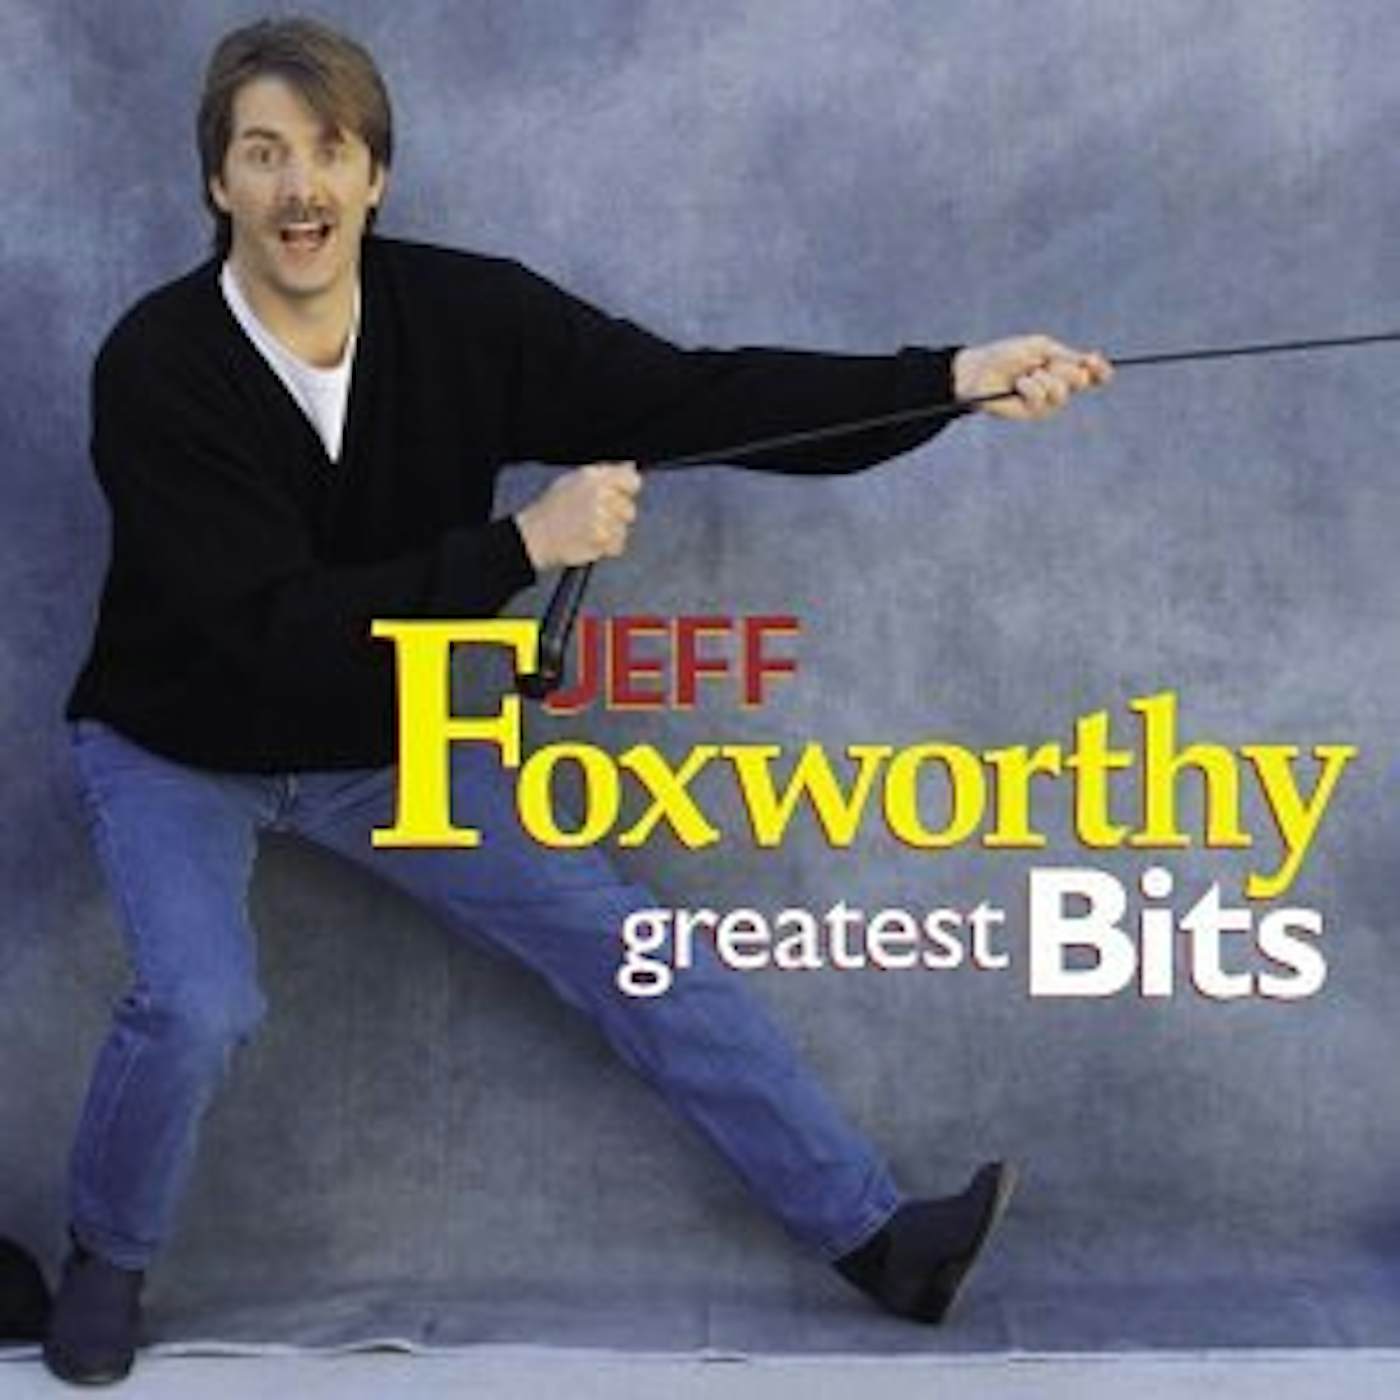 Jeff Foxworthy GREATEST BITS CD